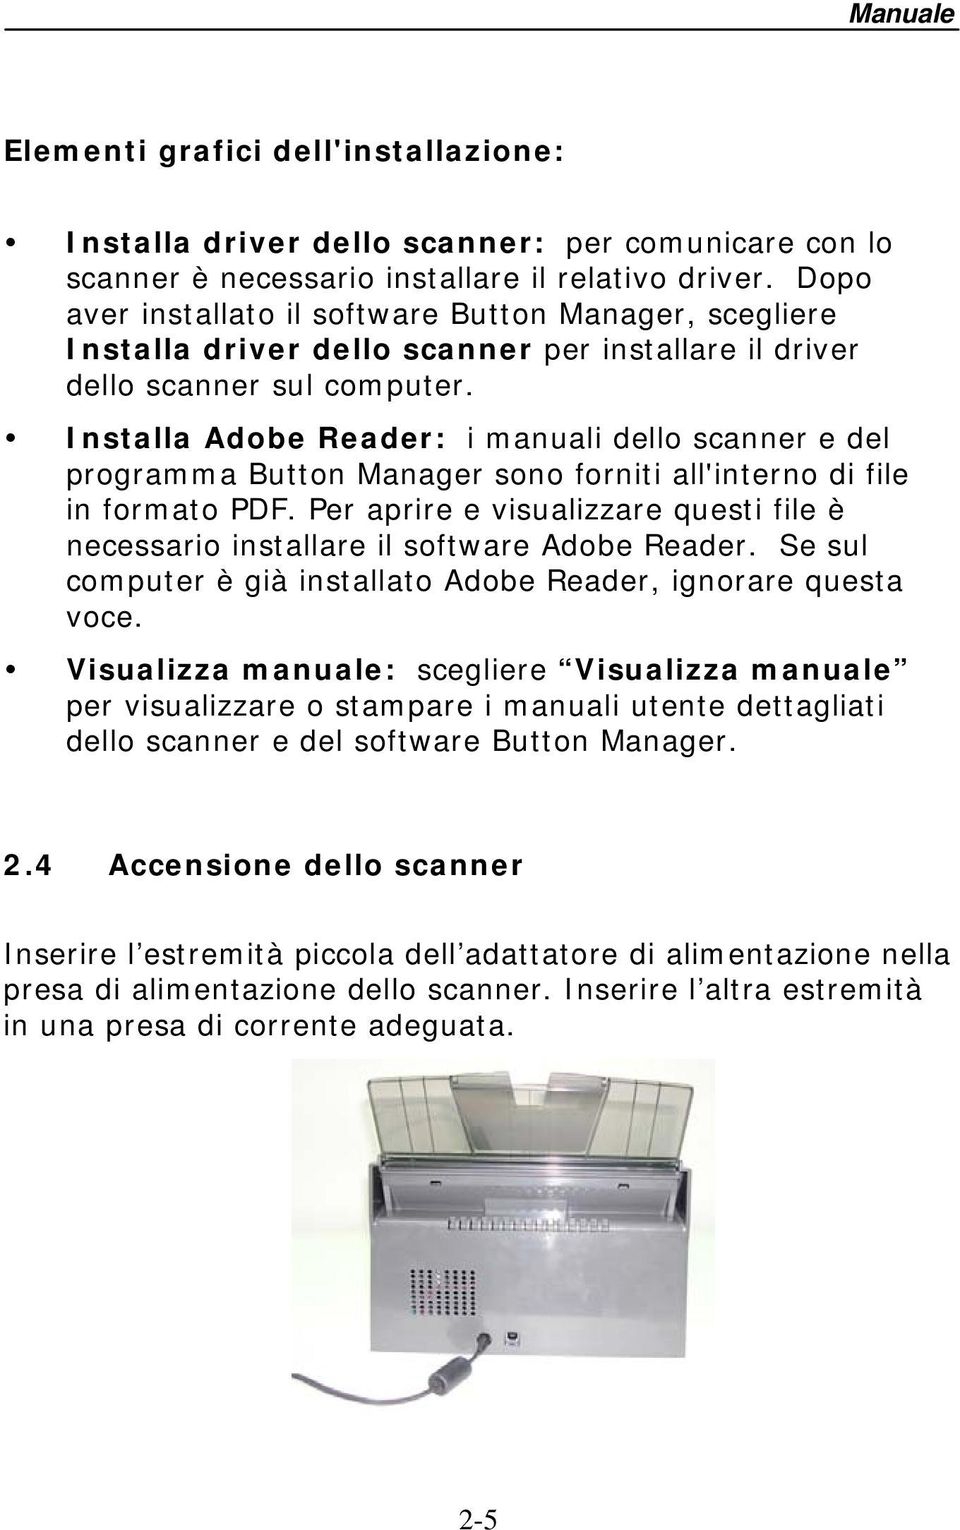 Installa Adobe Reader: i manuali dello scanner e del programma Button Manager sono forniti all'interno di file in formato PDF.